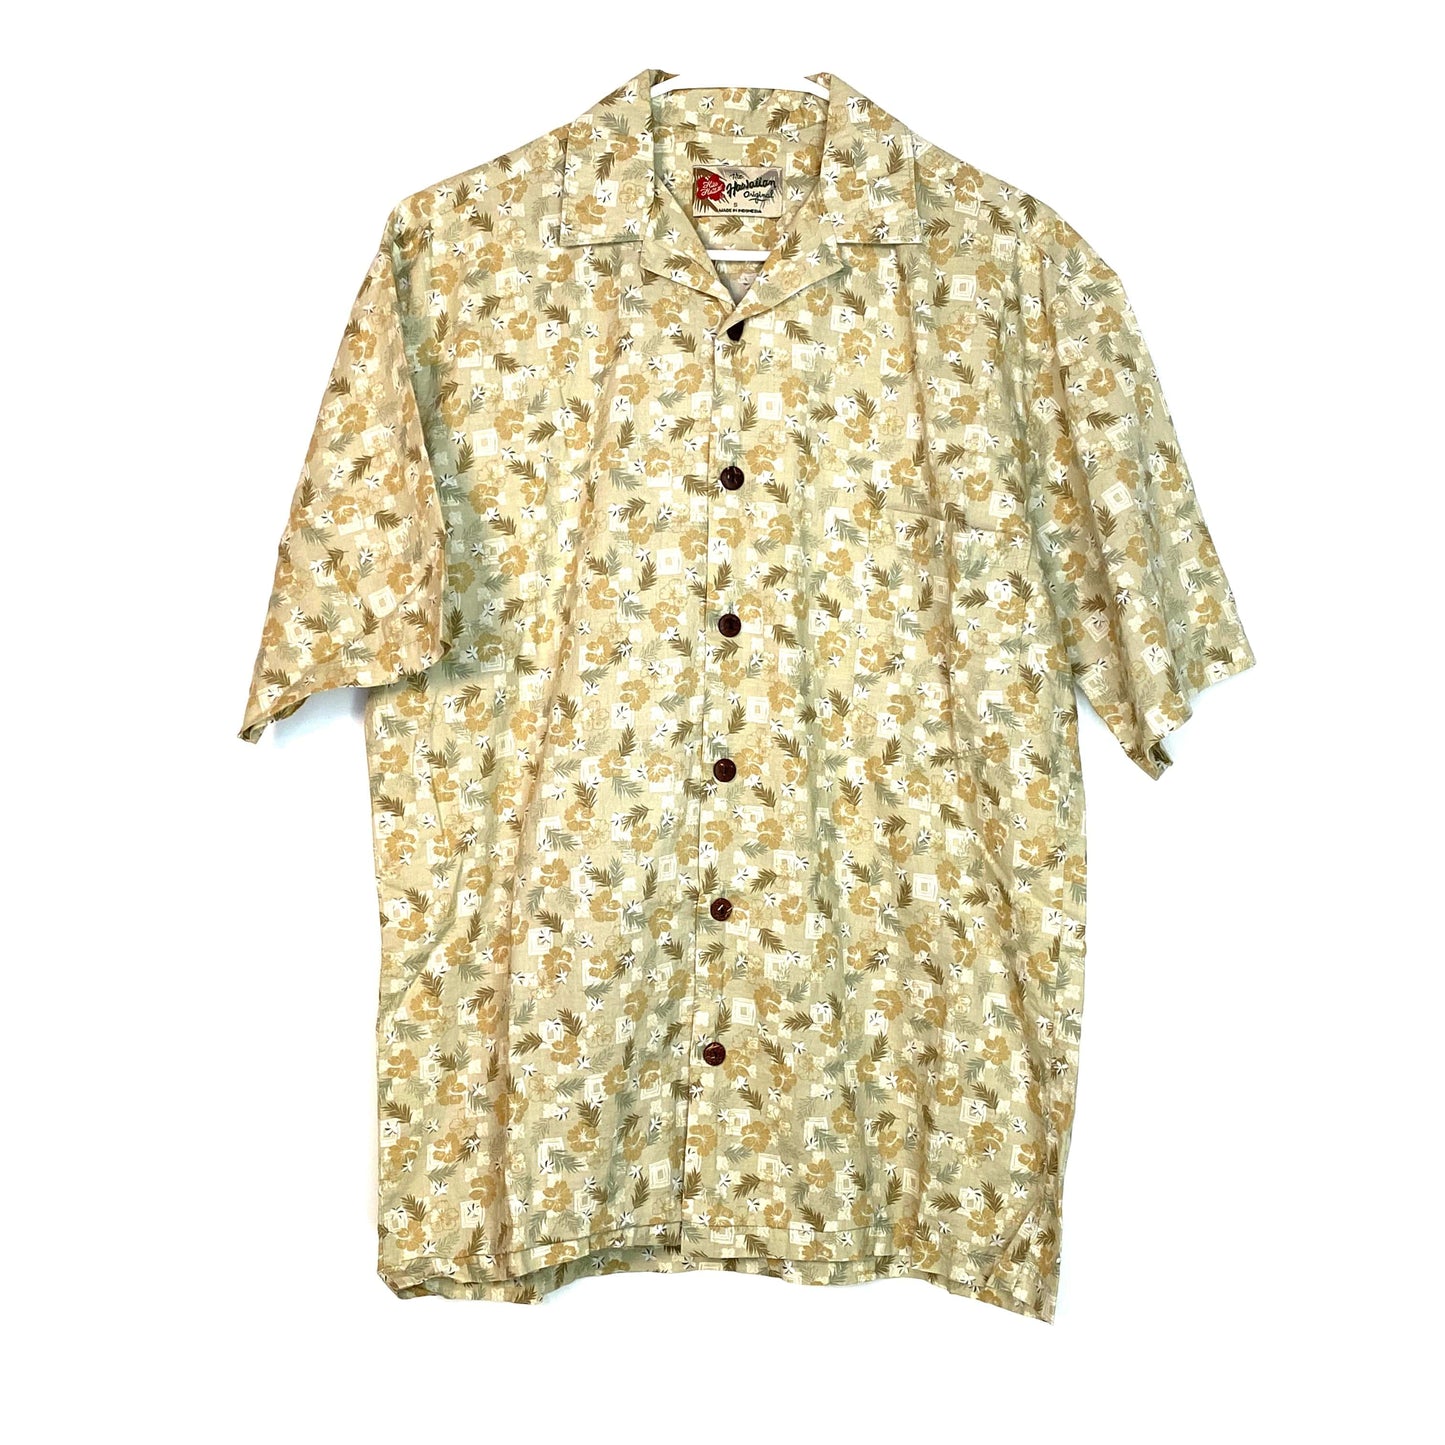 Vibrant Hilo Hattie Beige Floral Hawaiian Button-Up Shirt S/s - Men's S